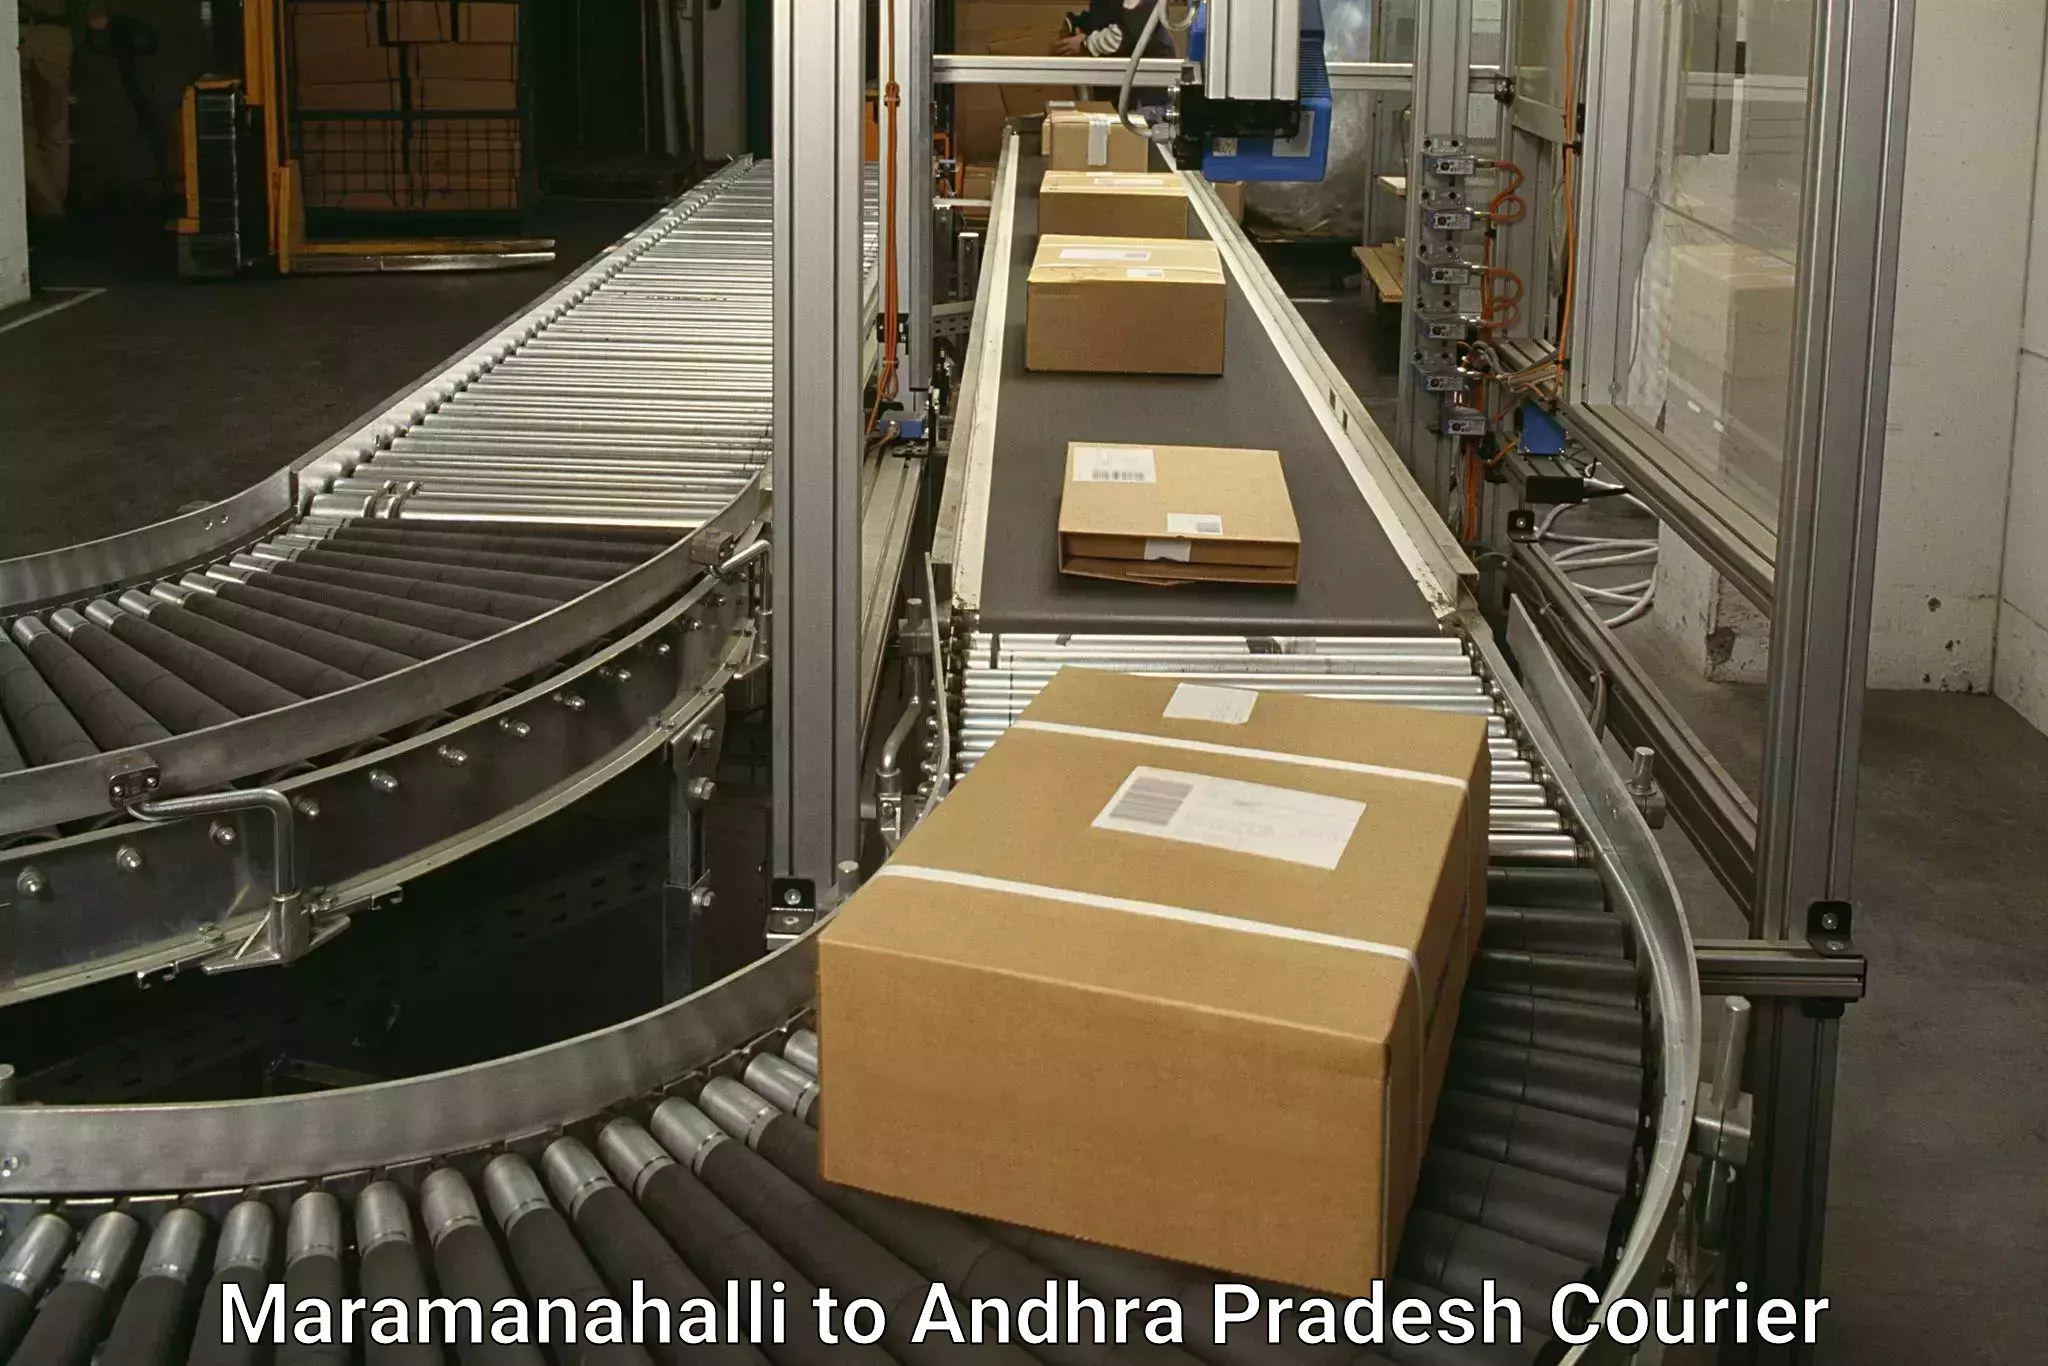 Express delivery capabilities Maramanahalli to Chodavaram